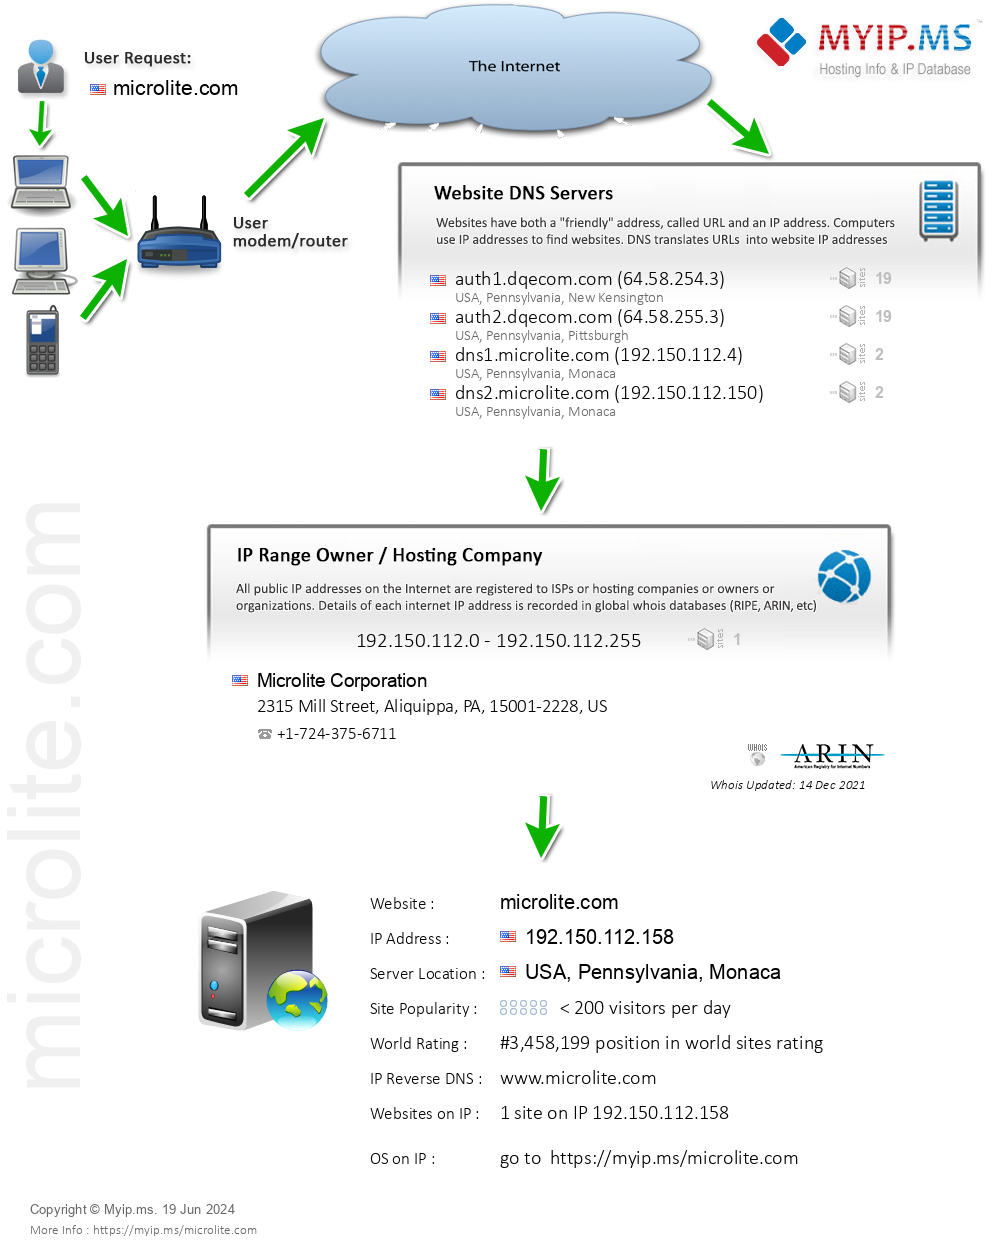 Microlite.com - Website Hosting Visual IP Diagram